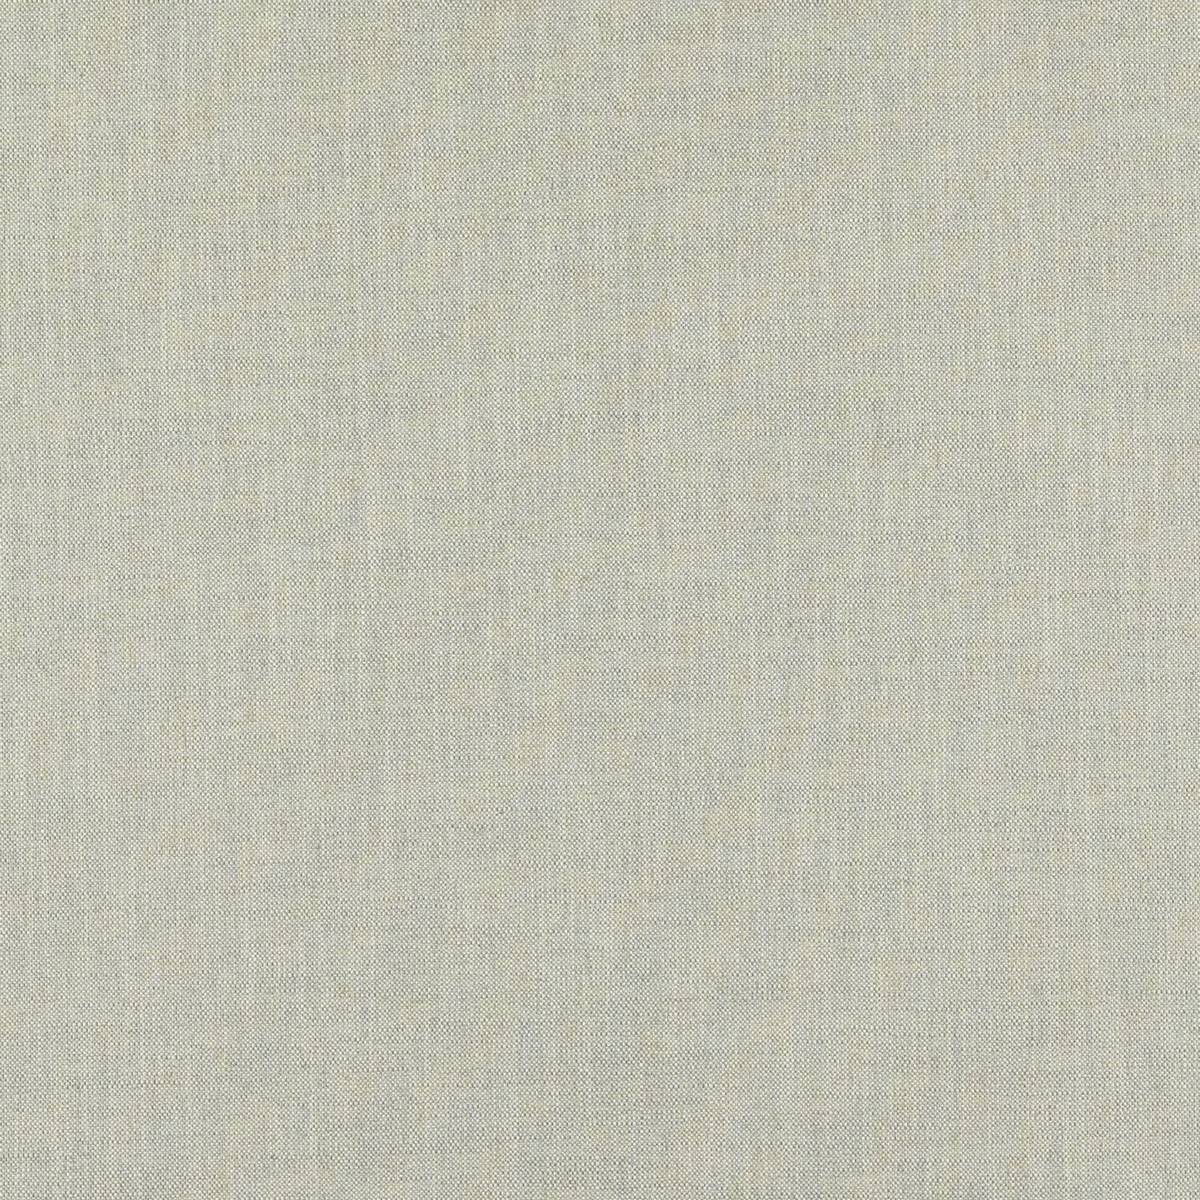 Maer Dove Fabric by Zoffany